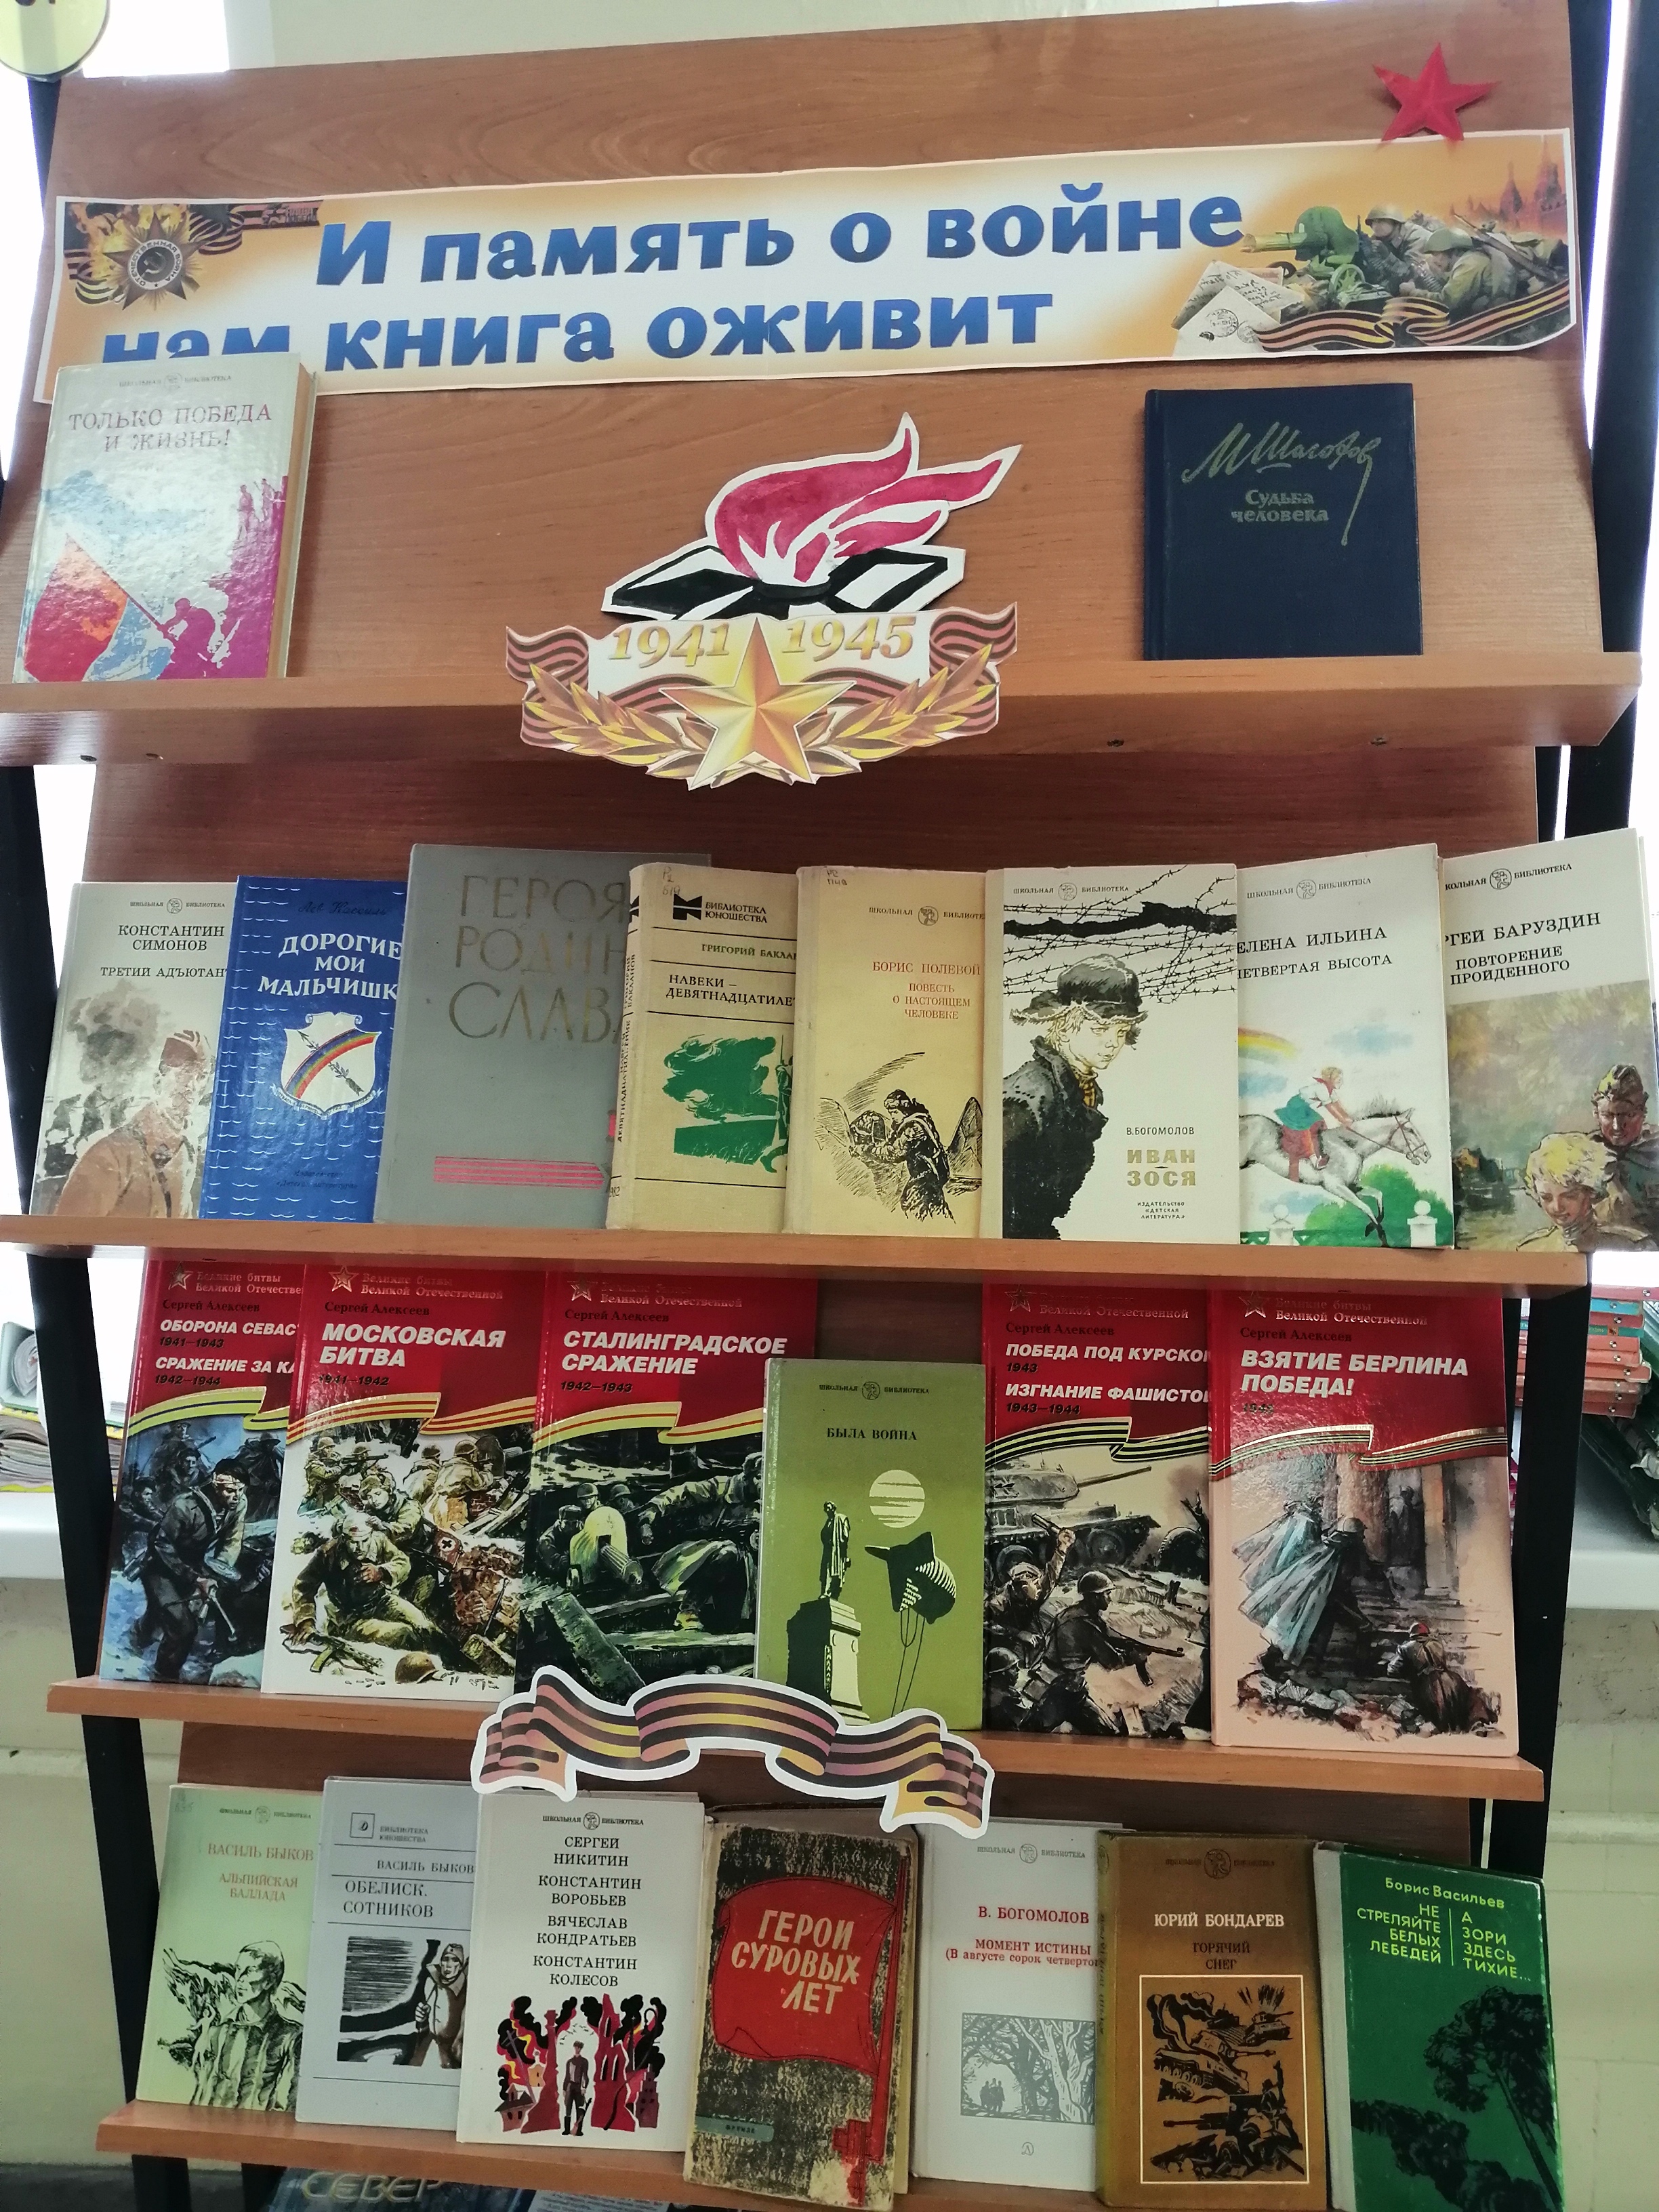 Книжная выставка "И память о войне нам книга оживит".